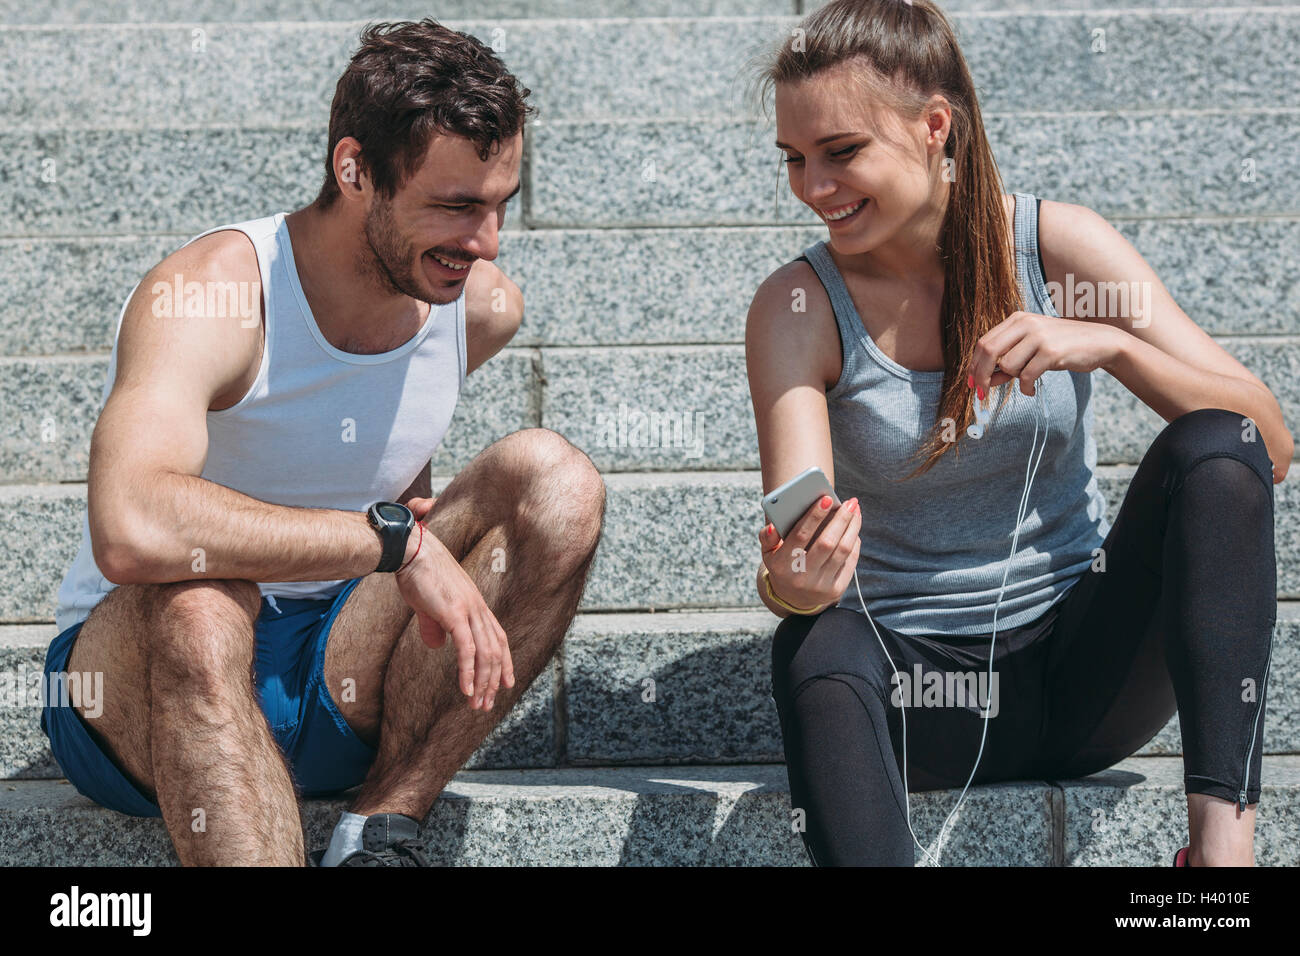 Stets gut gelaunte Frau zeigt Smartphone an männlichen Freund sitzend auf Schritte Stockfoto